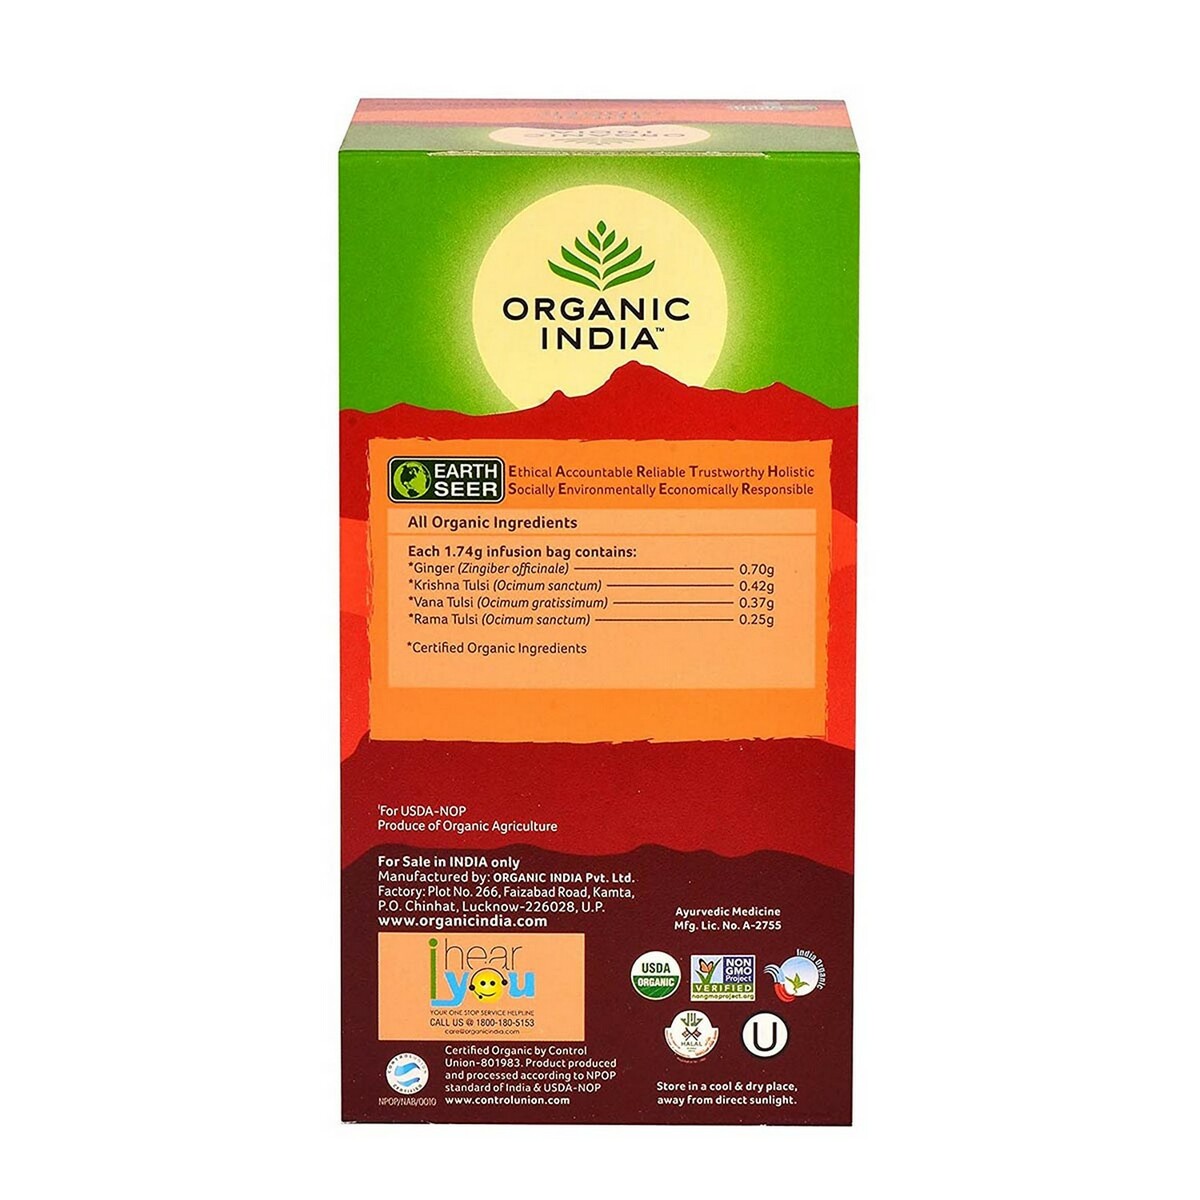 Organic India Tulsi Ginger Tea Bag 25's